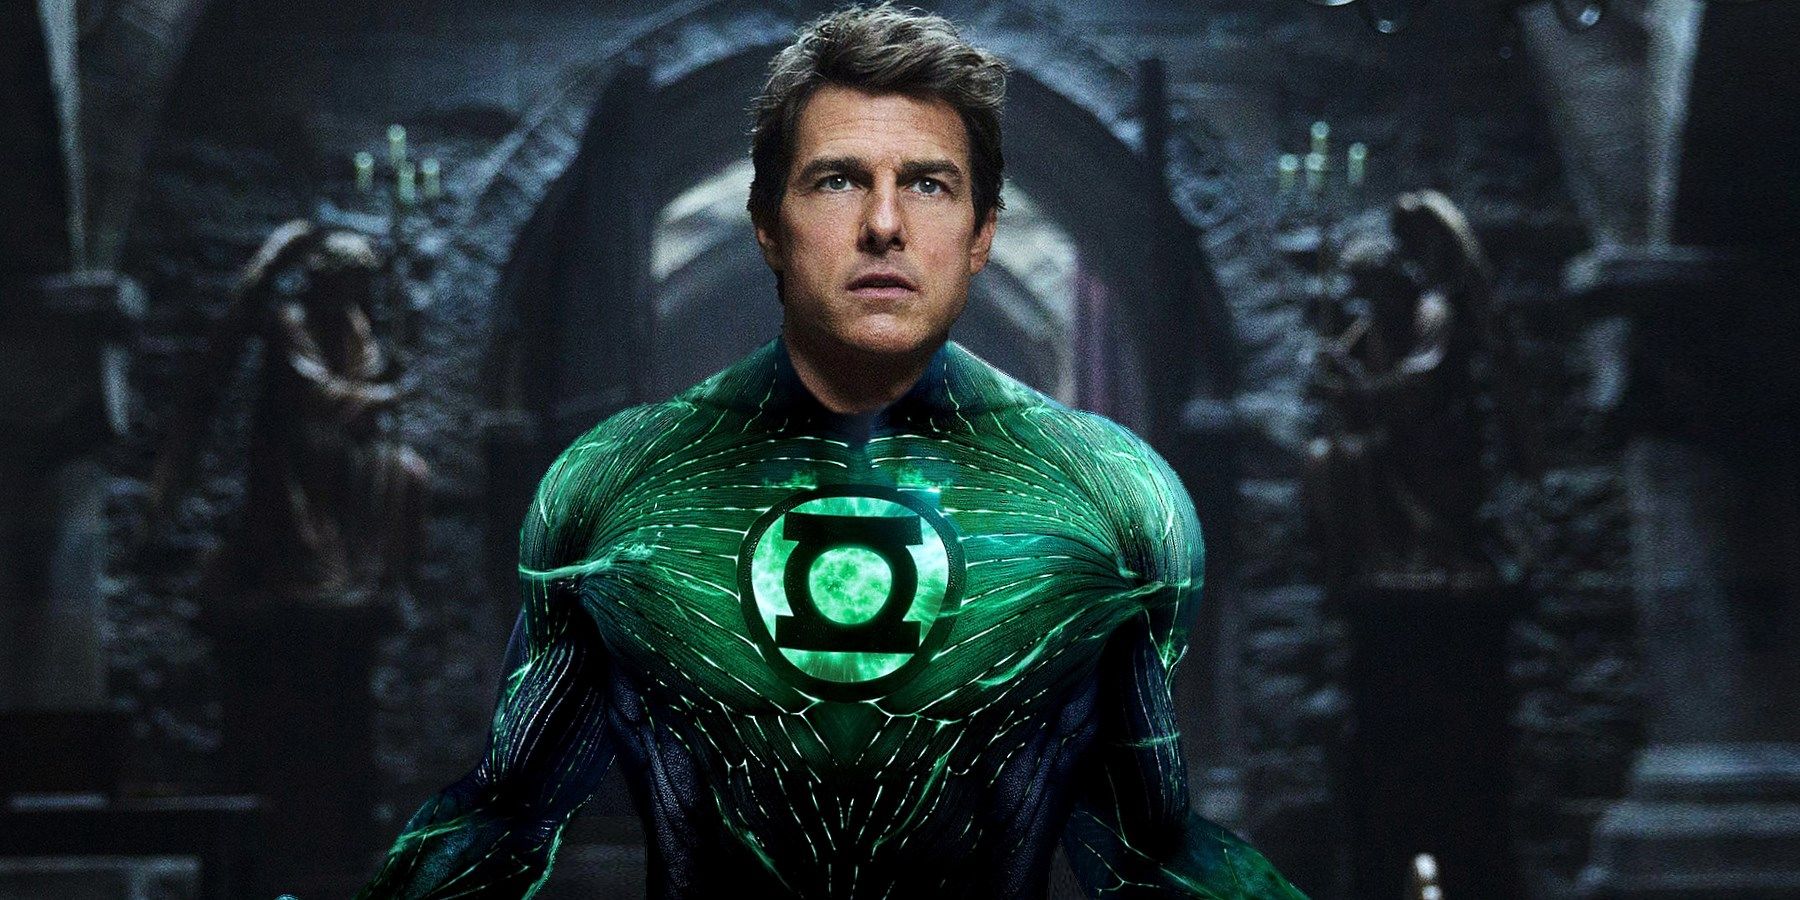 Tom Cruise as Green Lantern Movie Suit